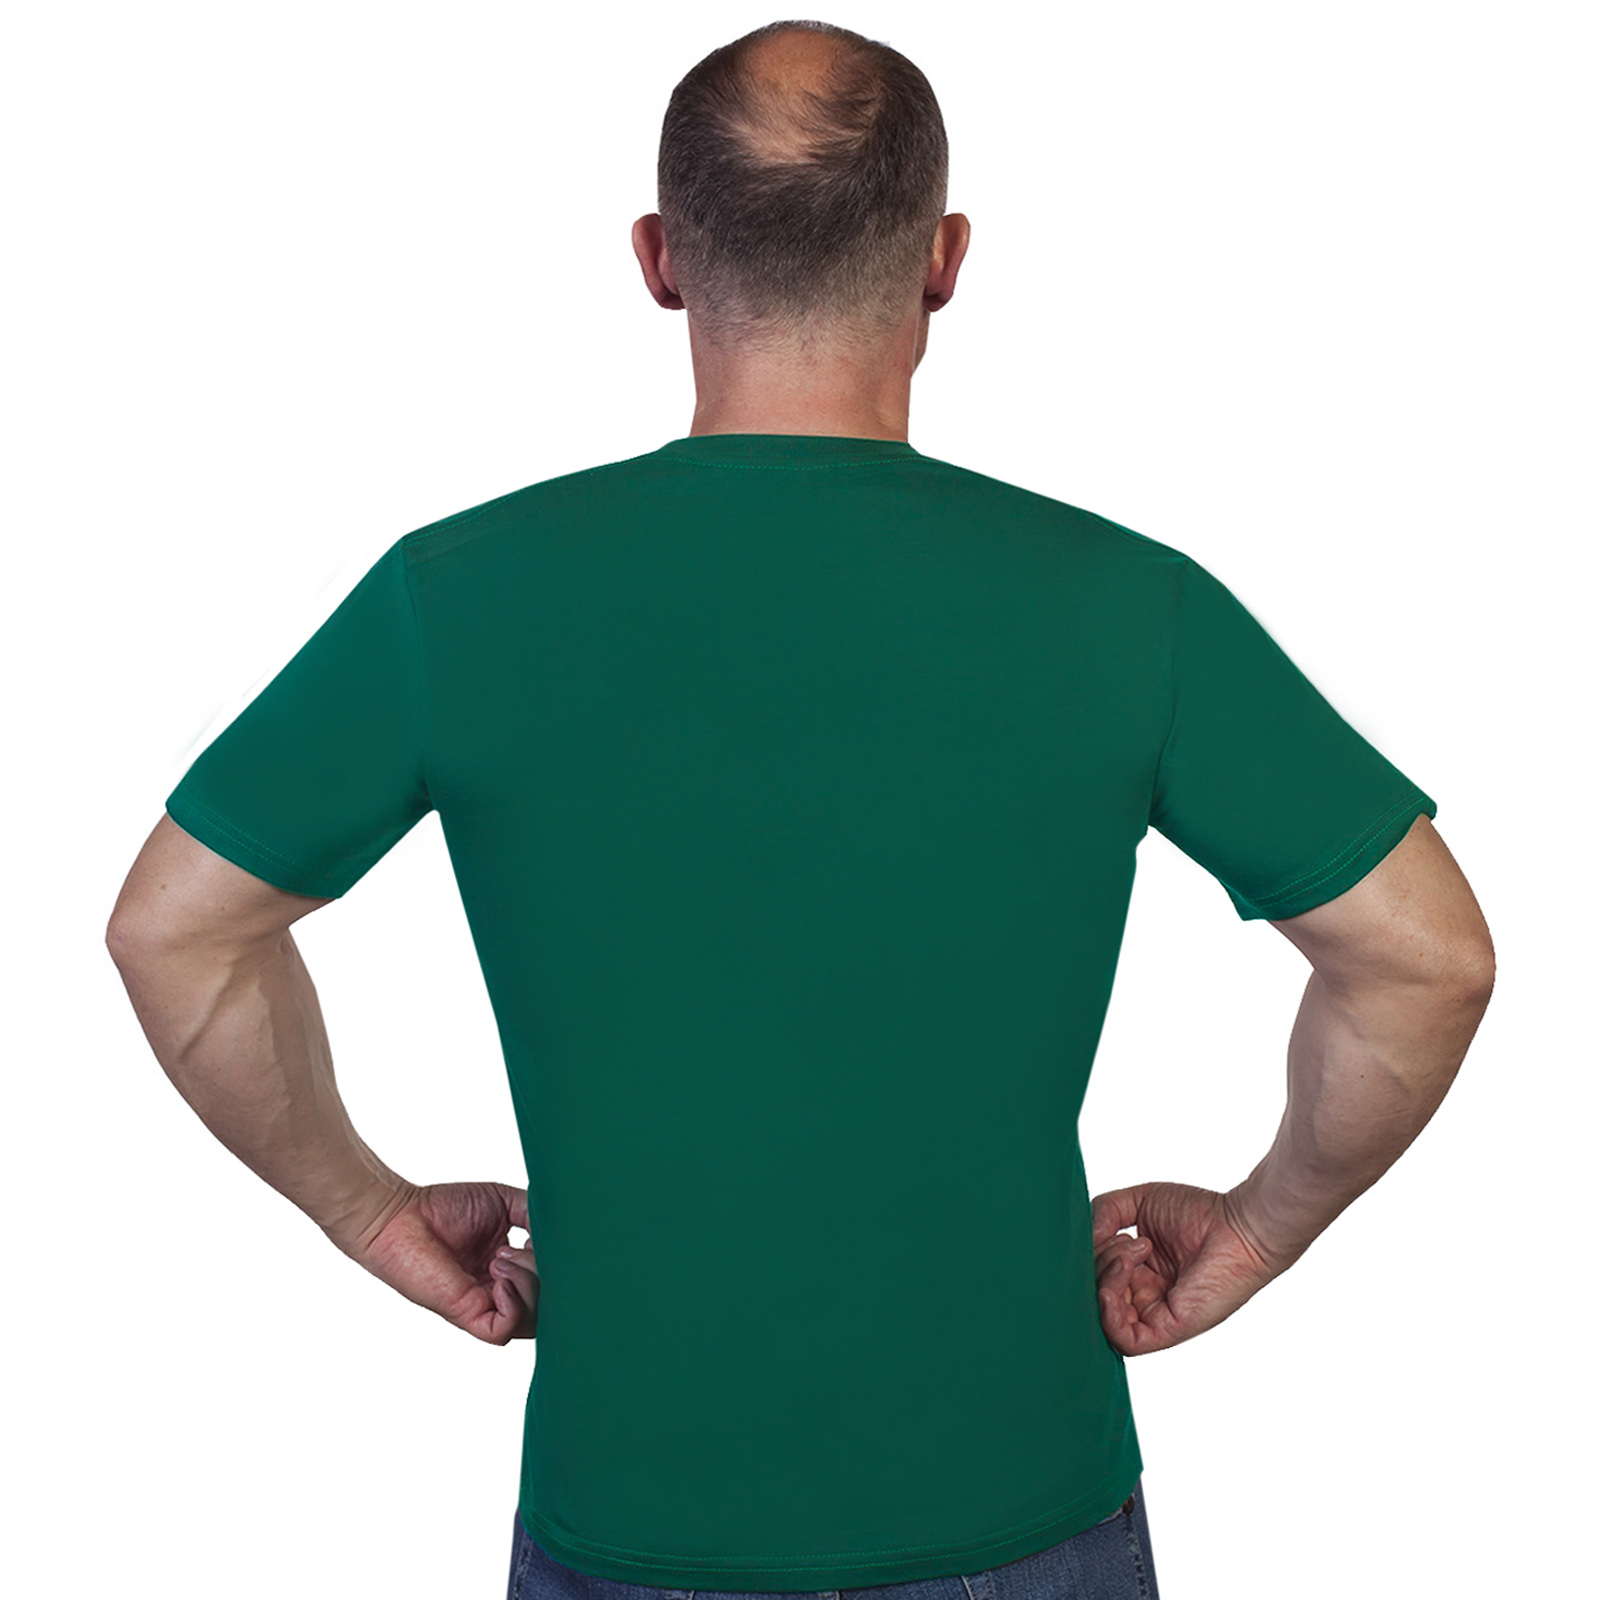 Зелёная футболка с термотрансфером "Пограничные Войска" 